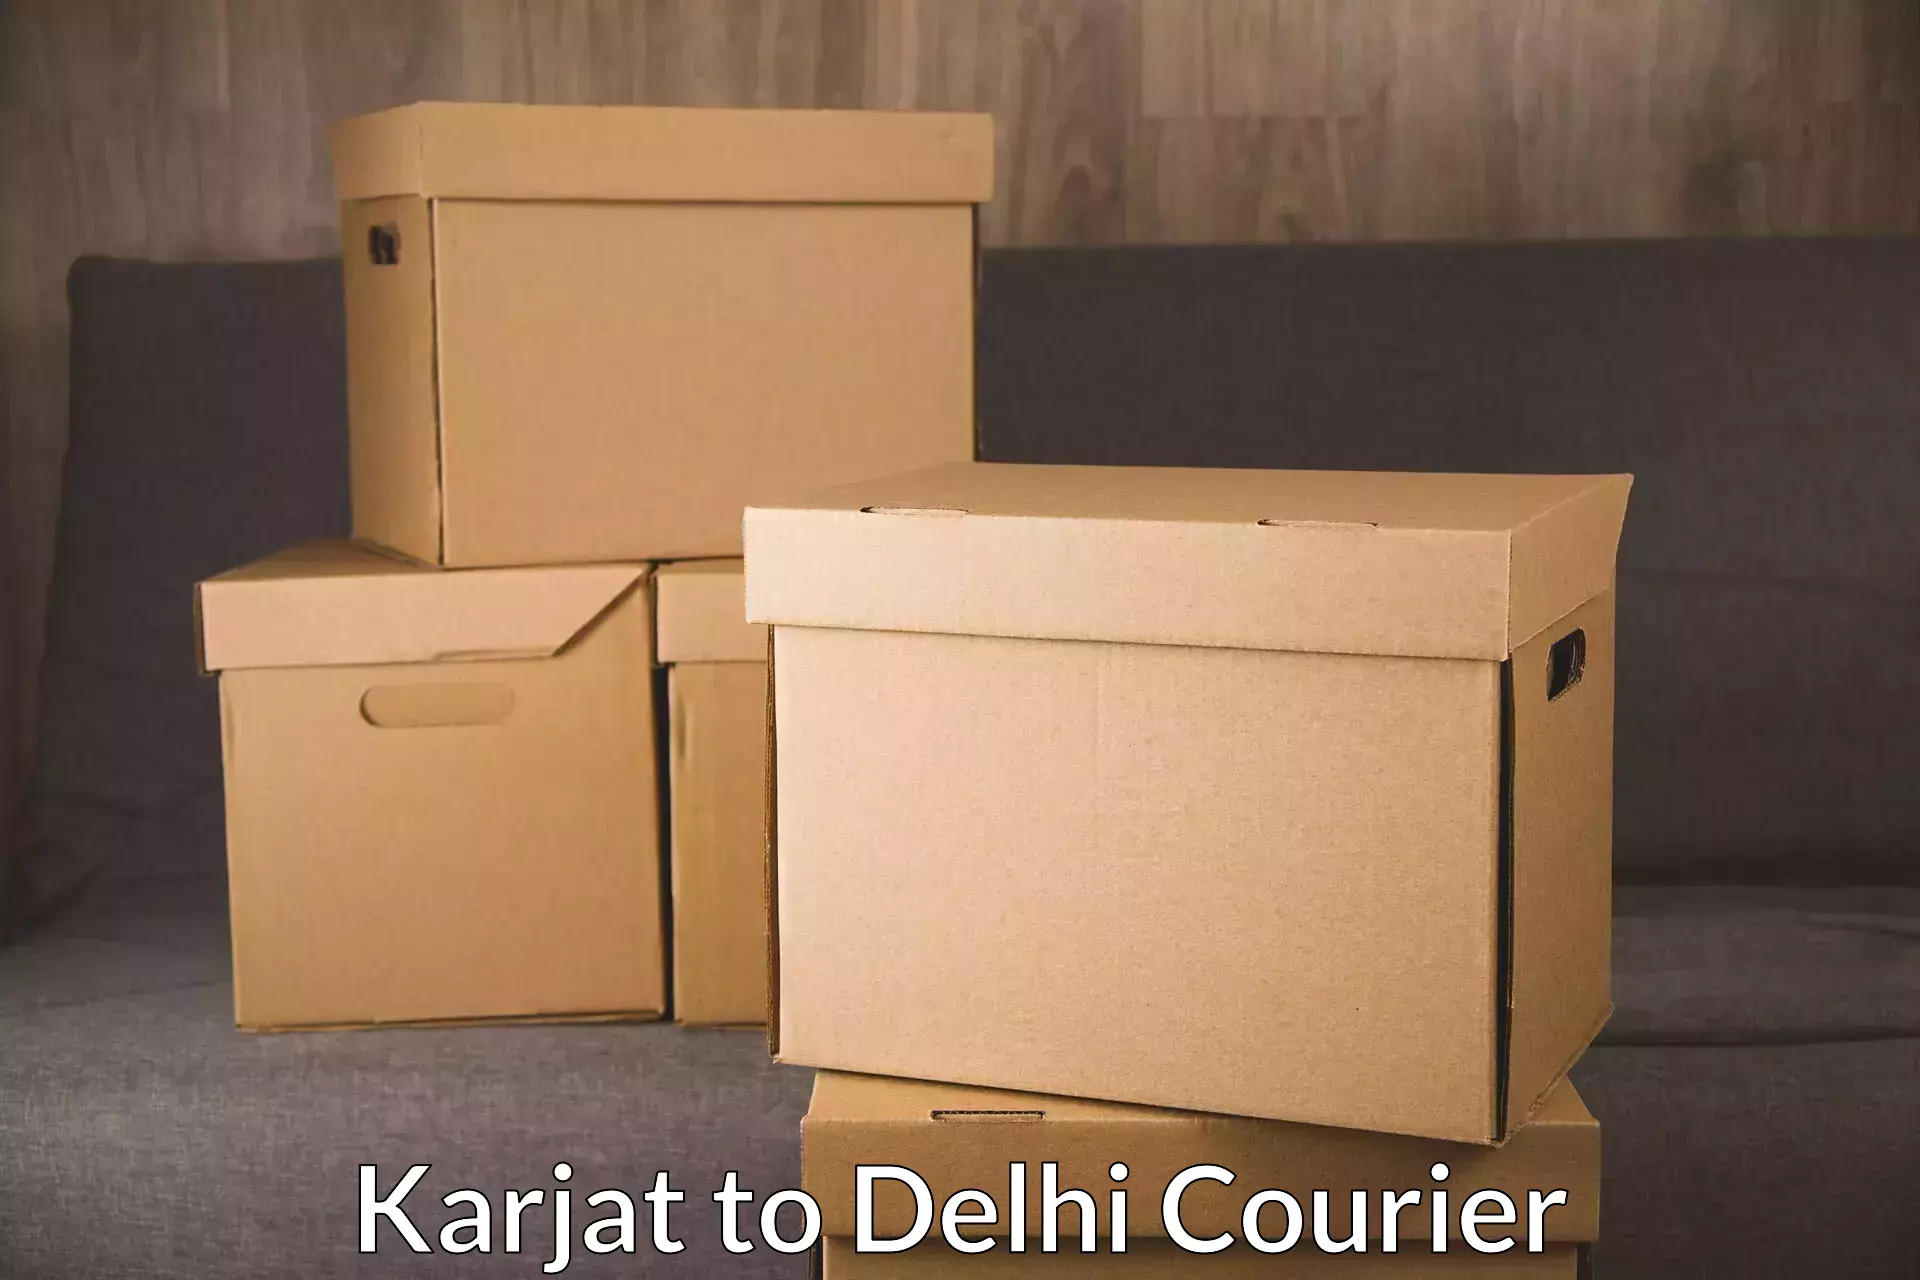 Comprehensive logistics solutions Karjat to Delhi